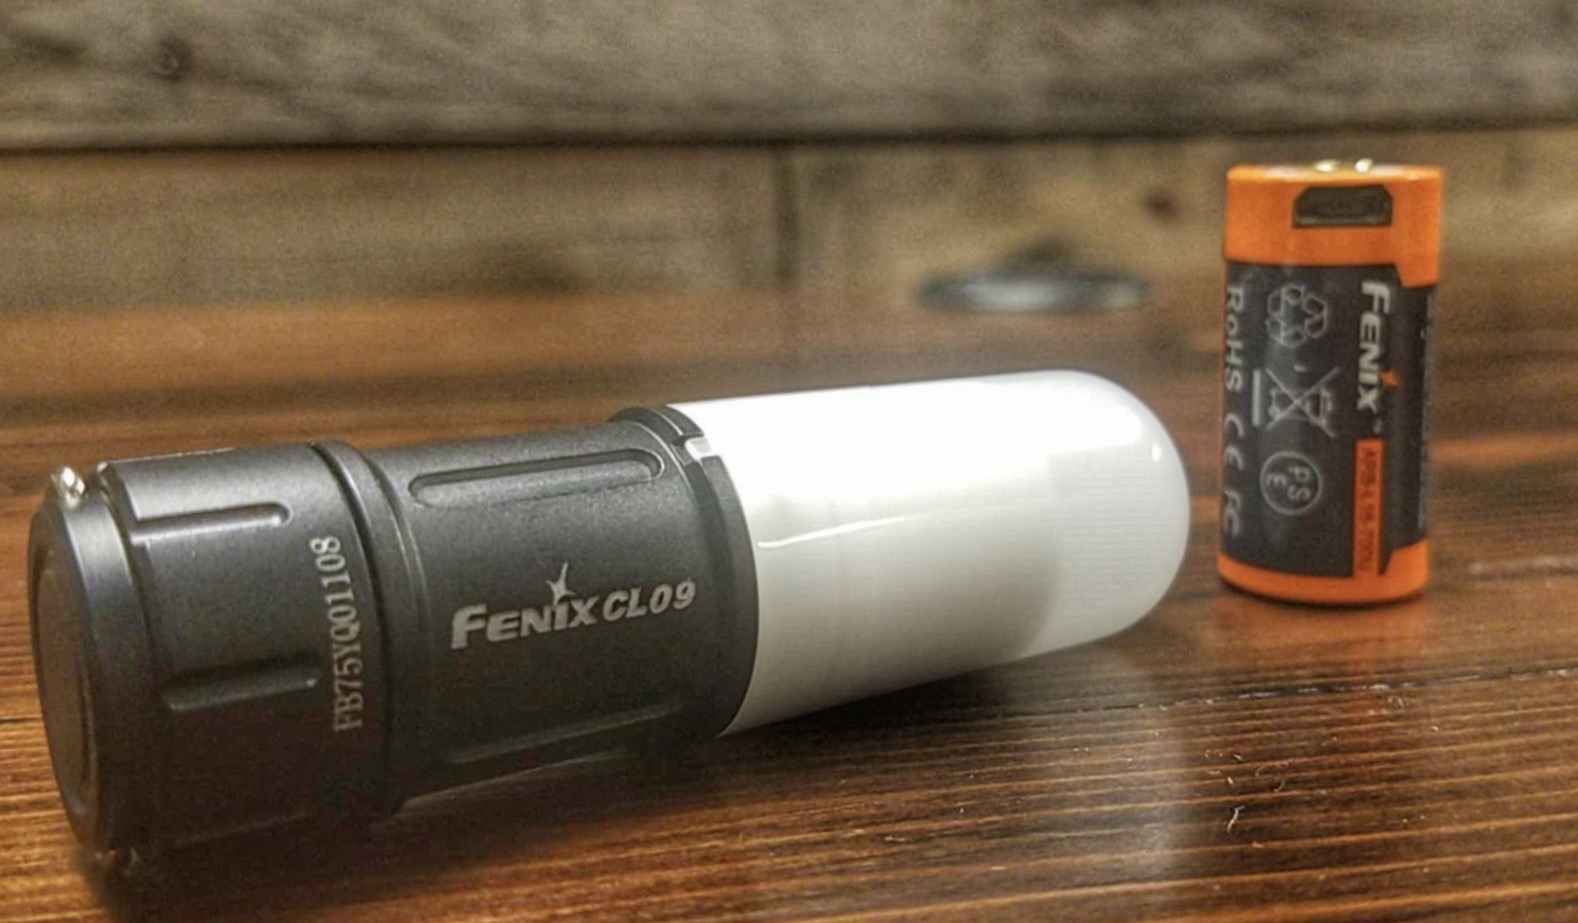 Fenix CL09 LED Flashlight Battery